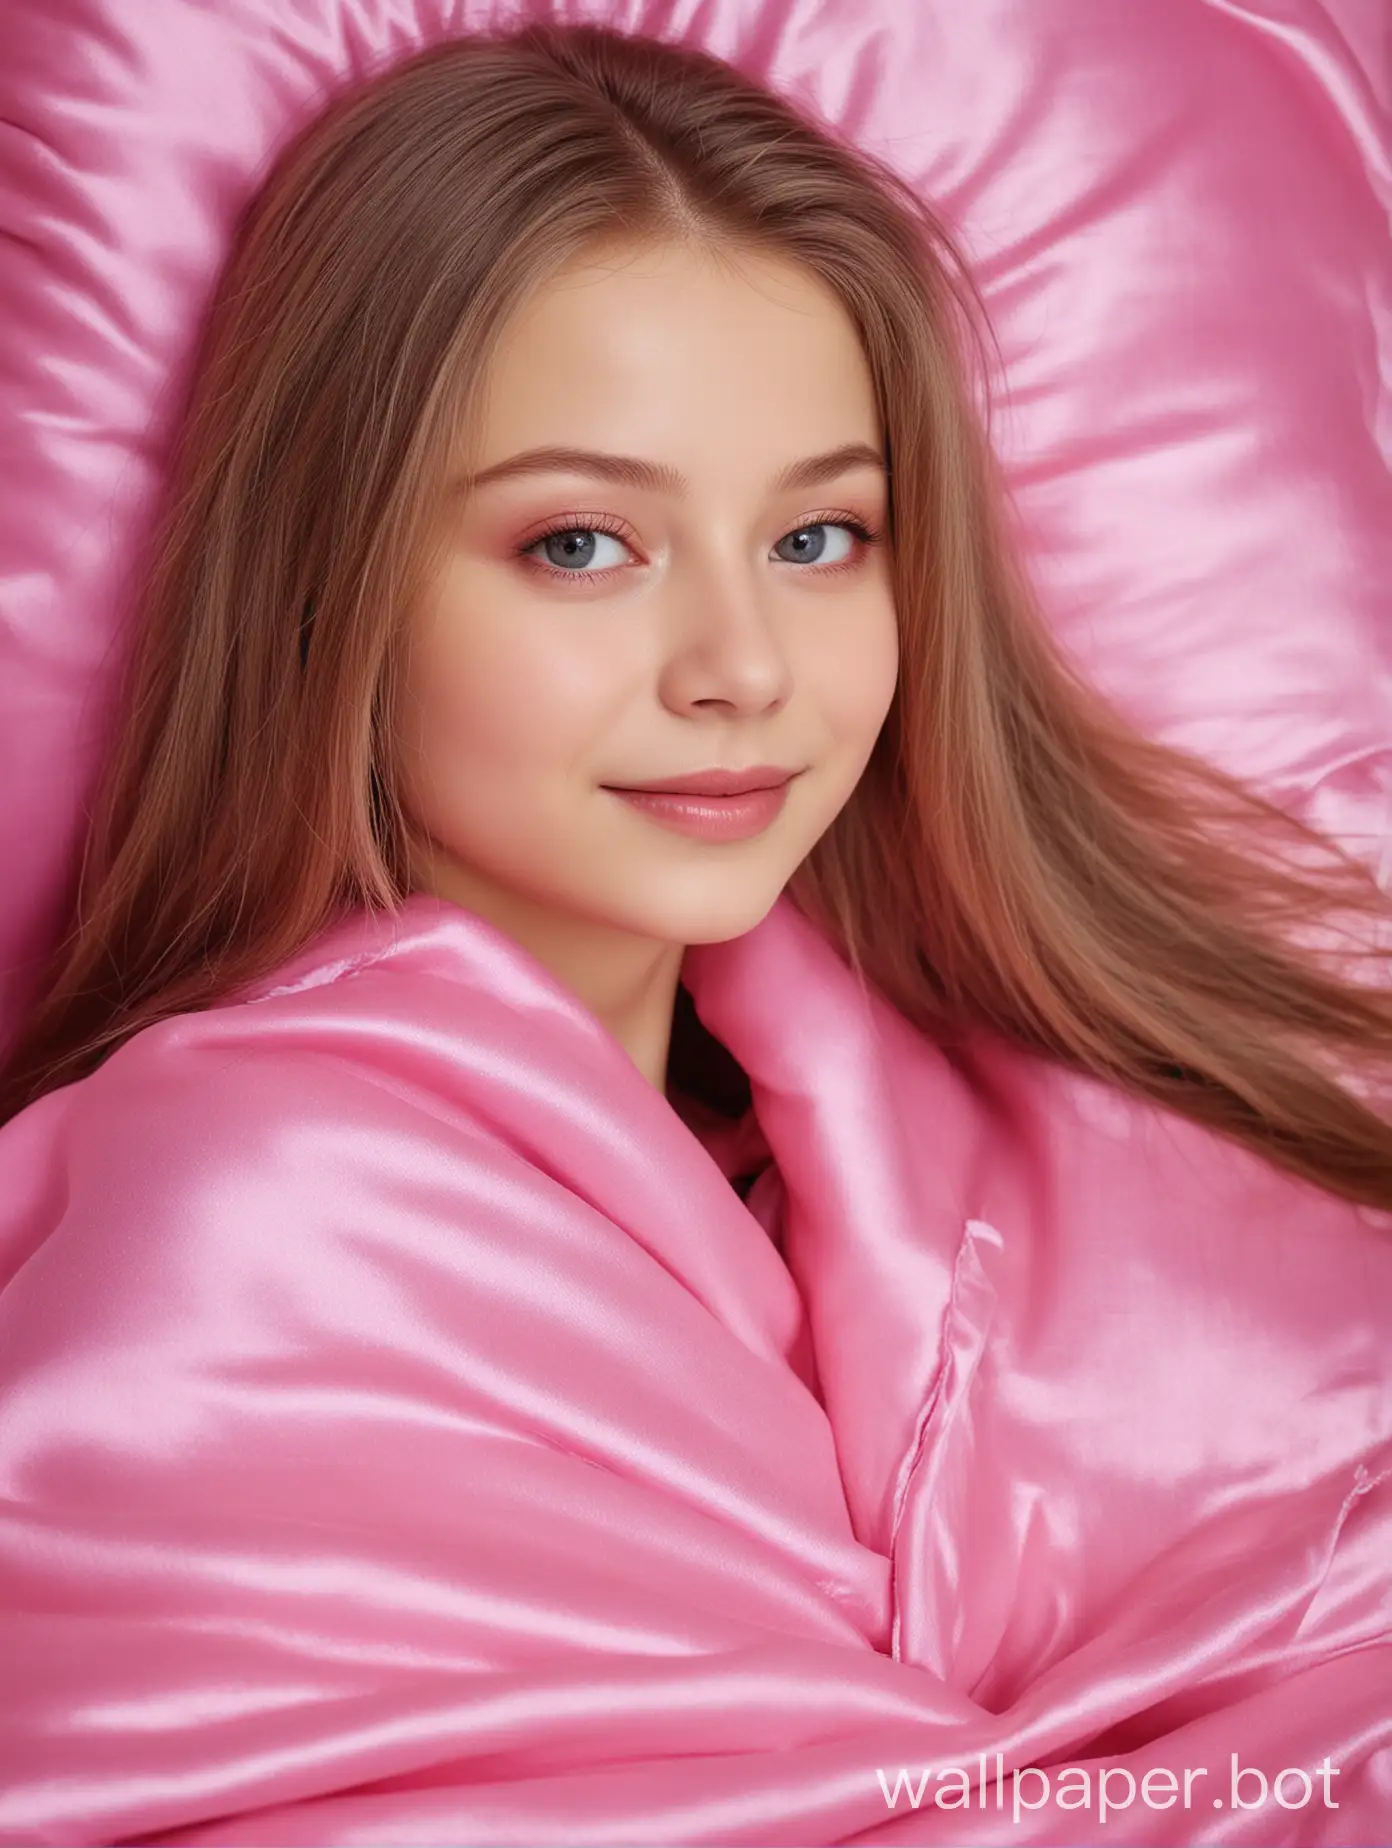 Сладкая милашка Юлия Липницкая с длинными прямыми шелковистыми волосами в розовом фуксиевом шелковом одеяле и подушке улыбается